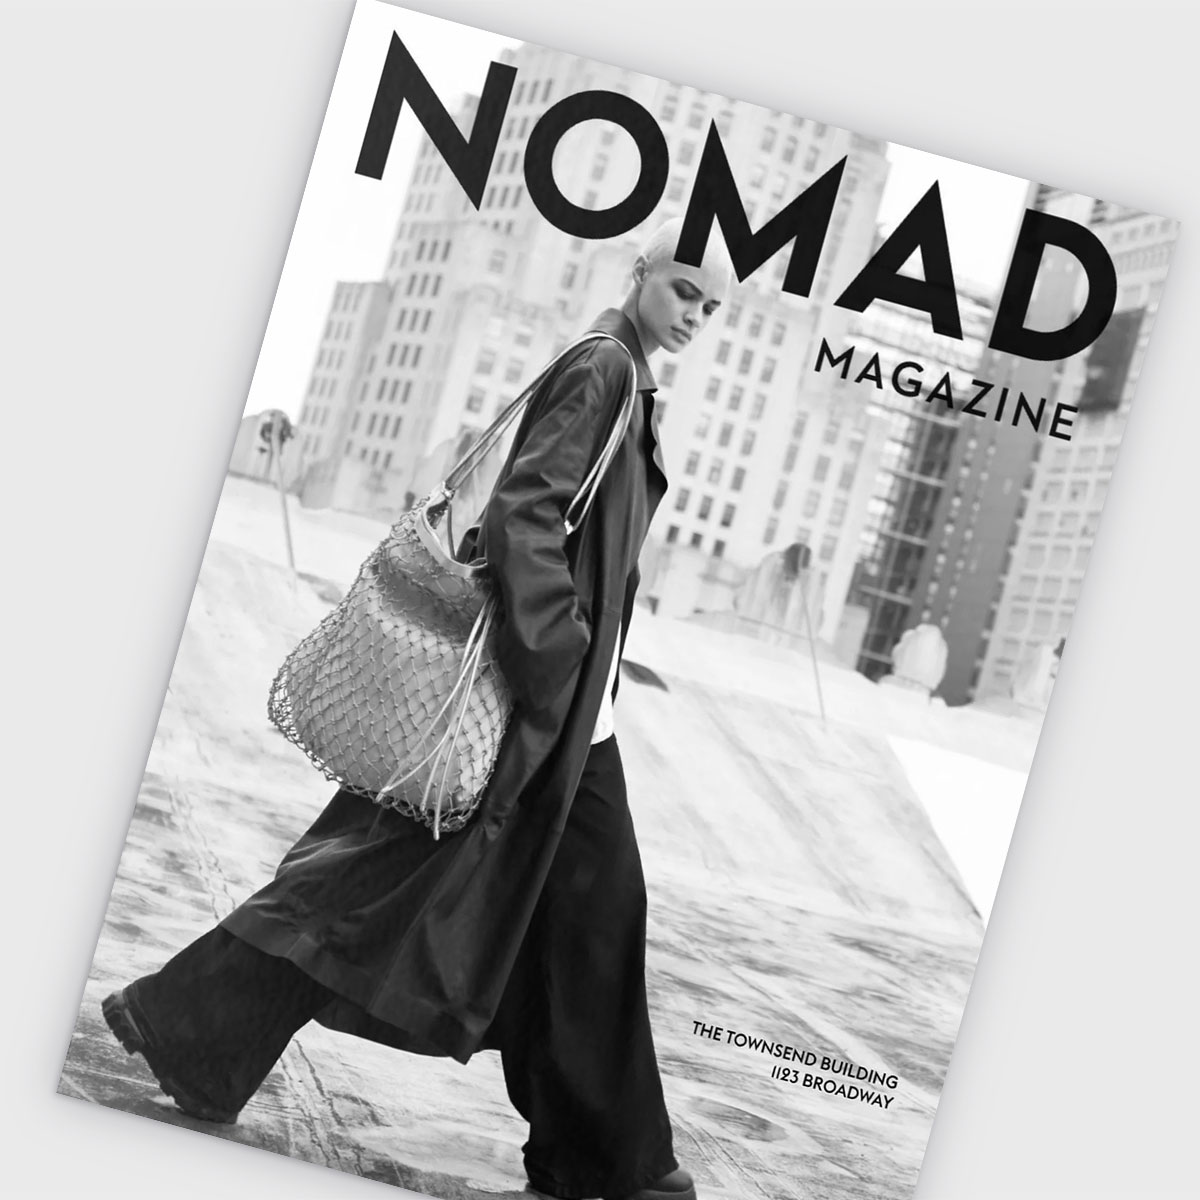 NOMAD Magazine